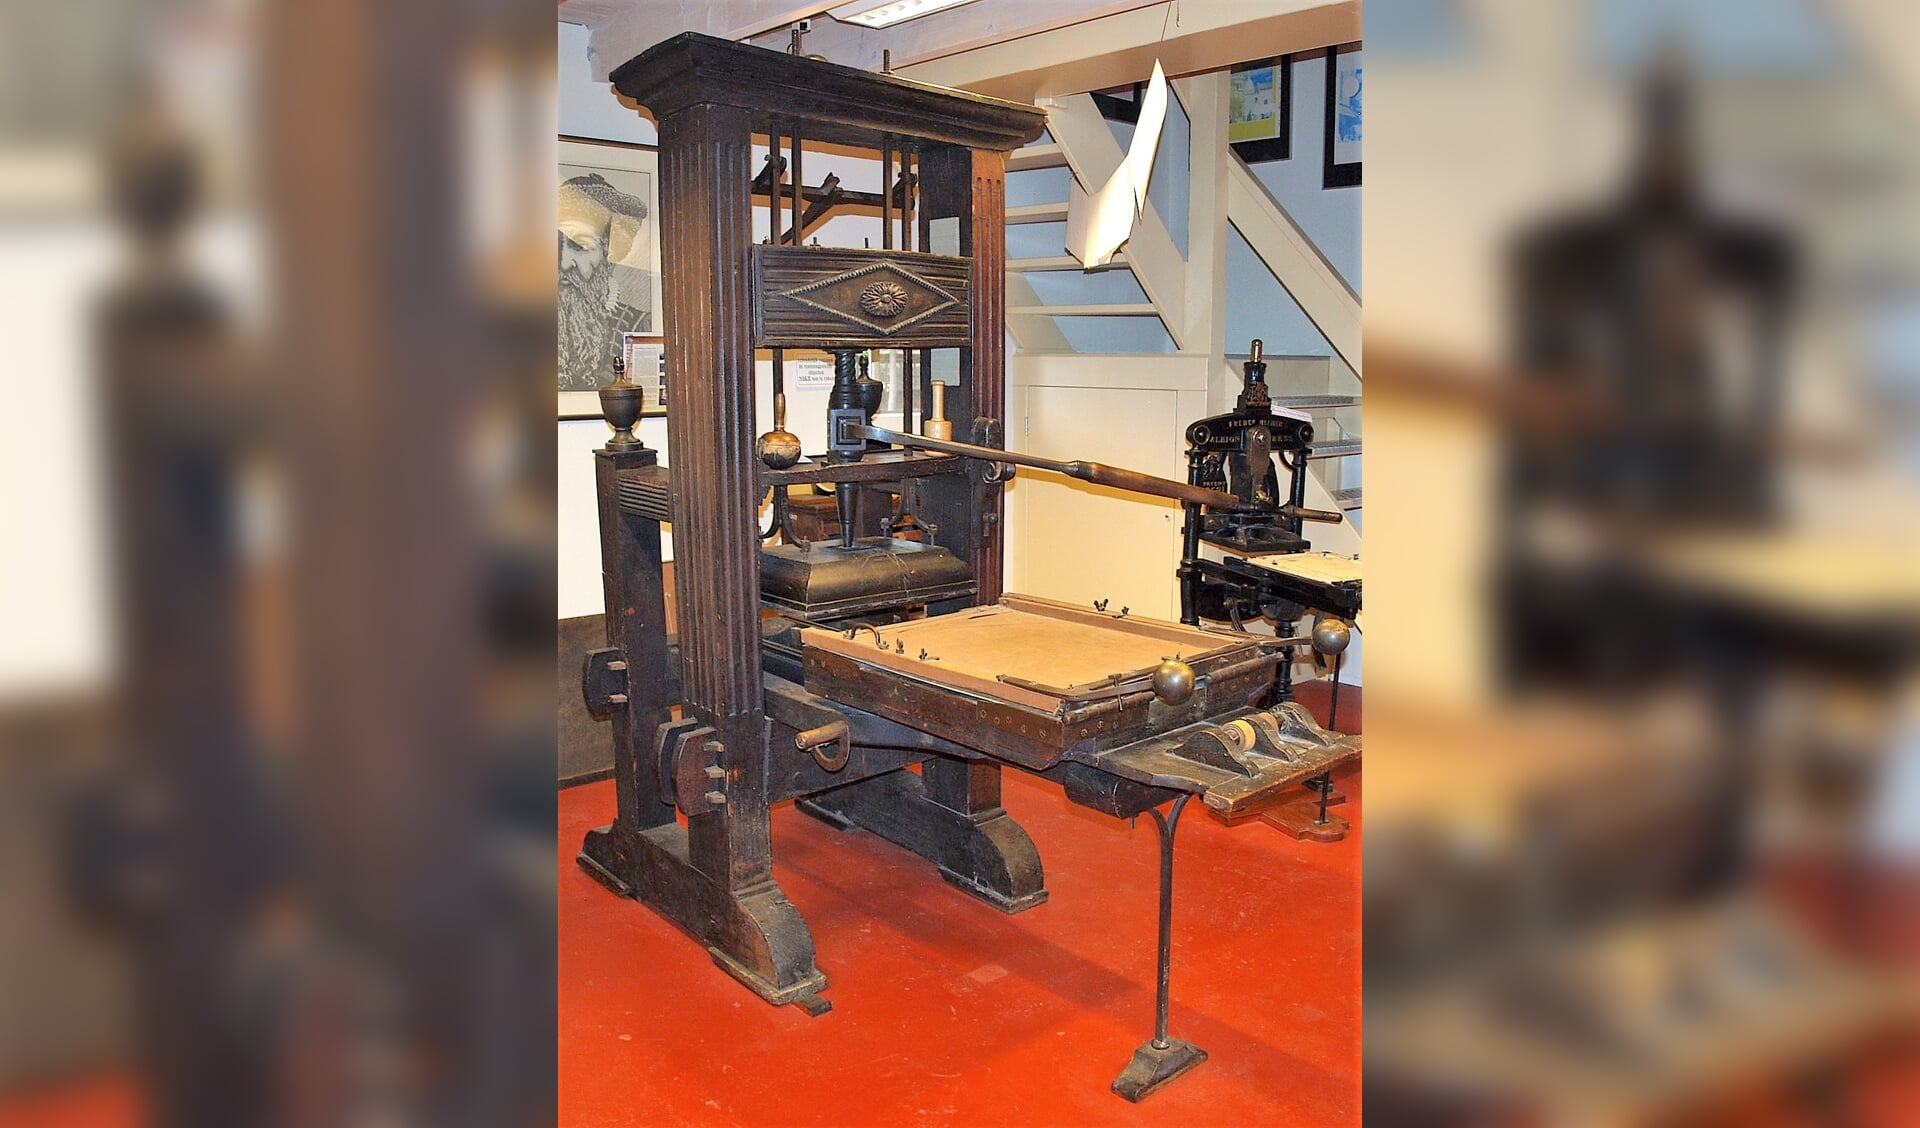 De houten drukpers uit 1760.